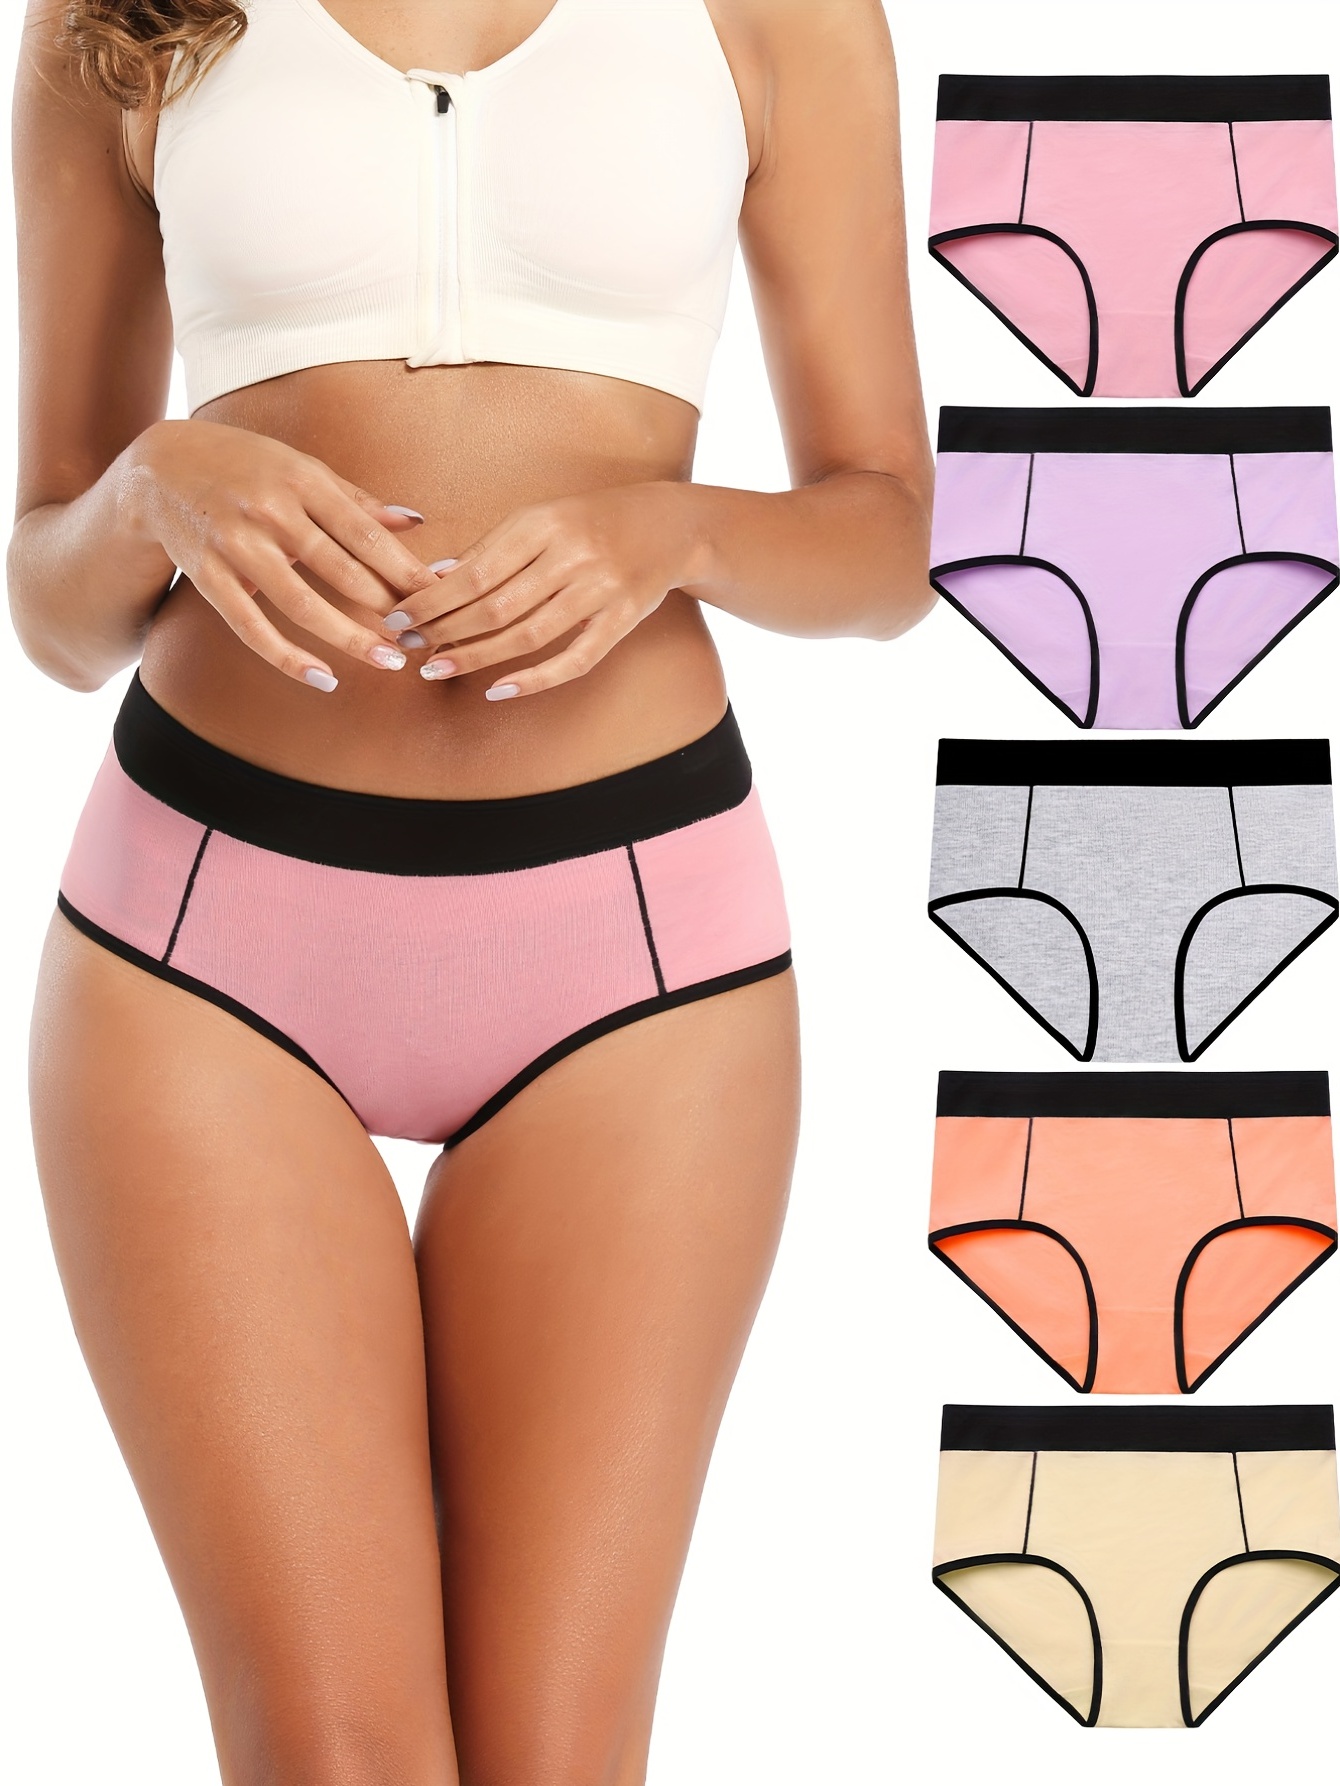 5pcs one pack Women's High Waist Cotton Panties Briefs Soft Breathable Comfy  Underwear Plus Size M-XL 